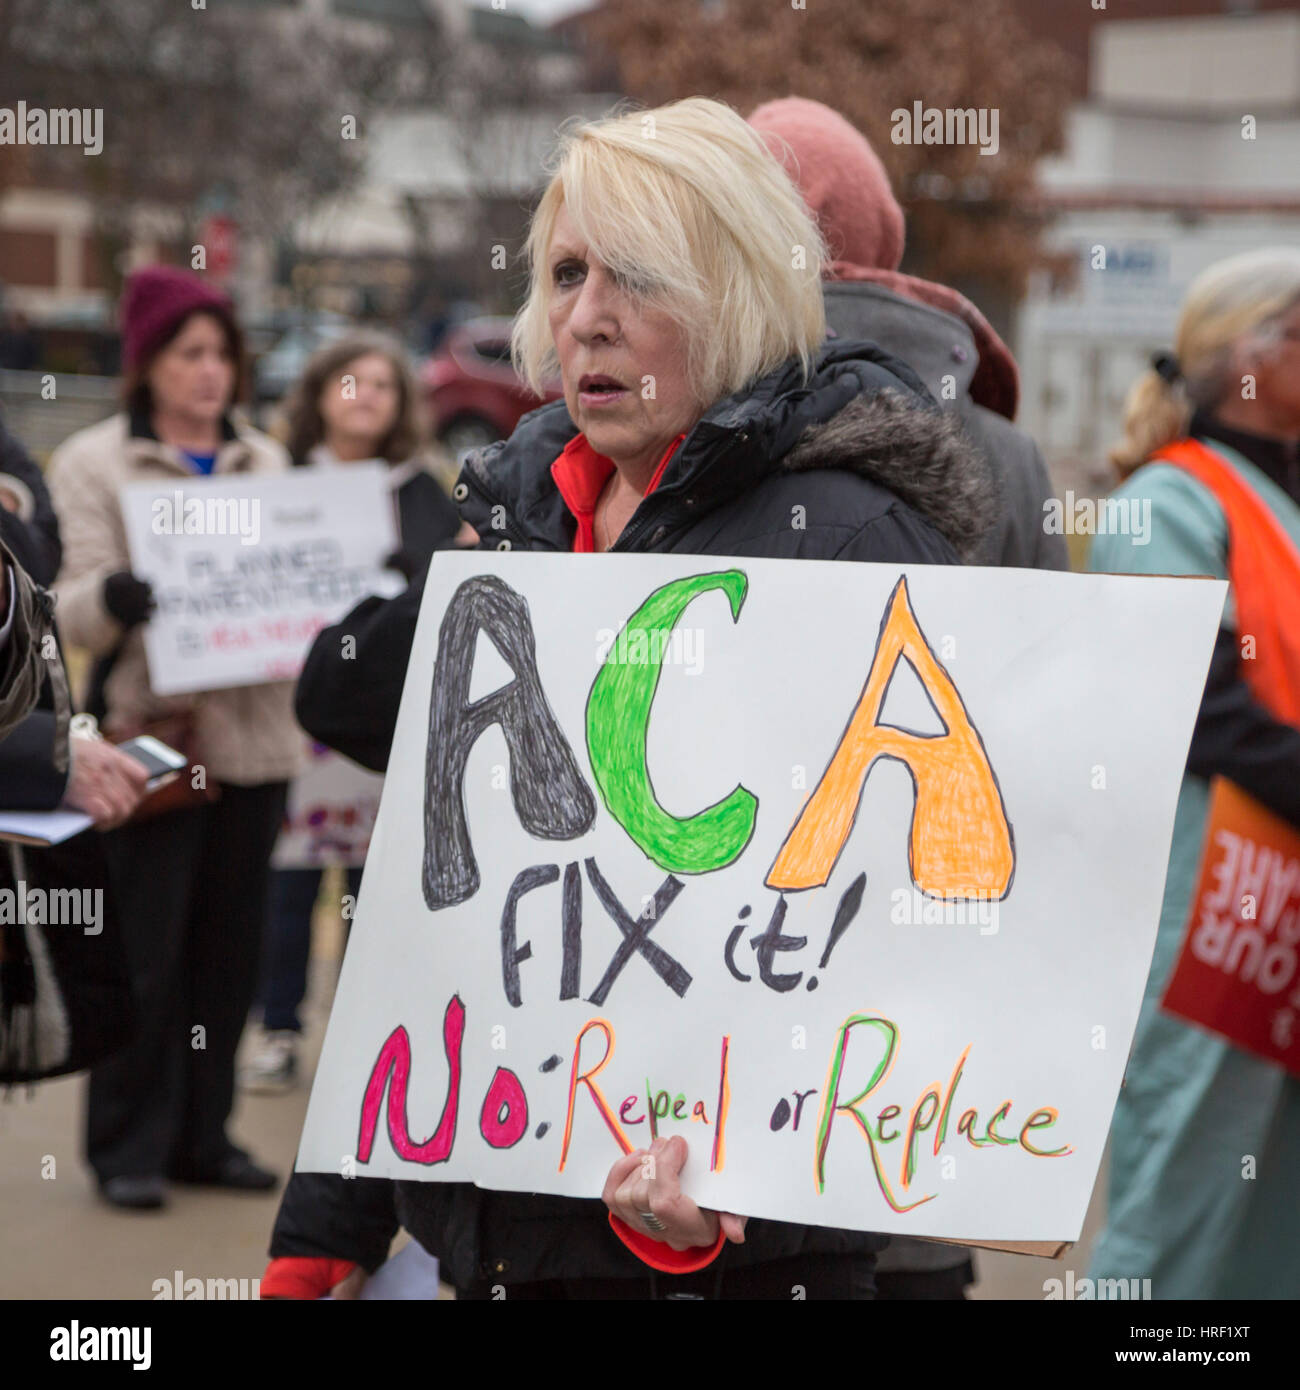 Birmingham, Michigan - Menschen-Rallye, erschwingliche Gesundheitsversorgung zu speichern. Sie protestierten die Republikaner bei den Plan, die bezahlbare Pflege Act aufzuheben. Stockfoto